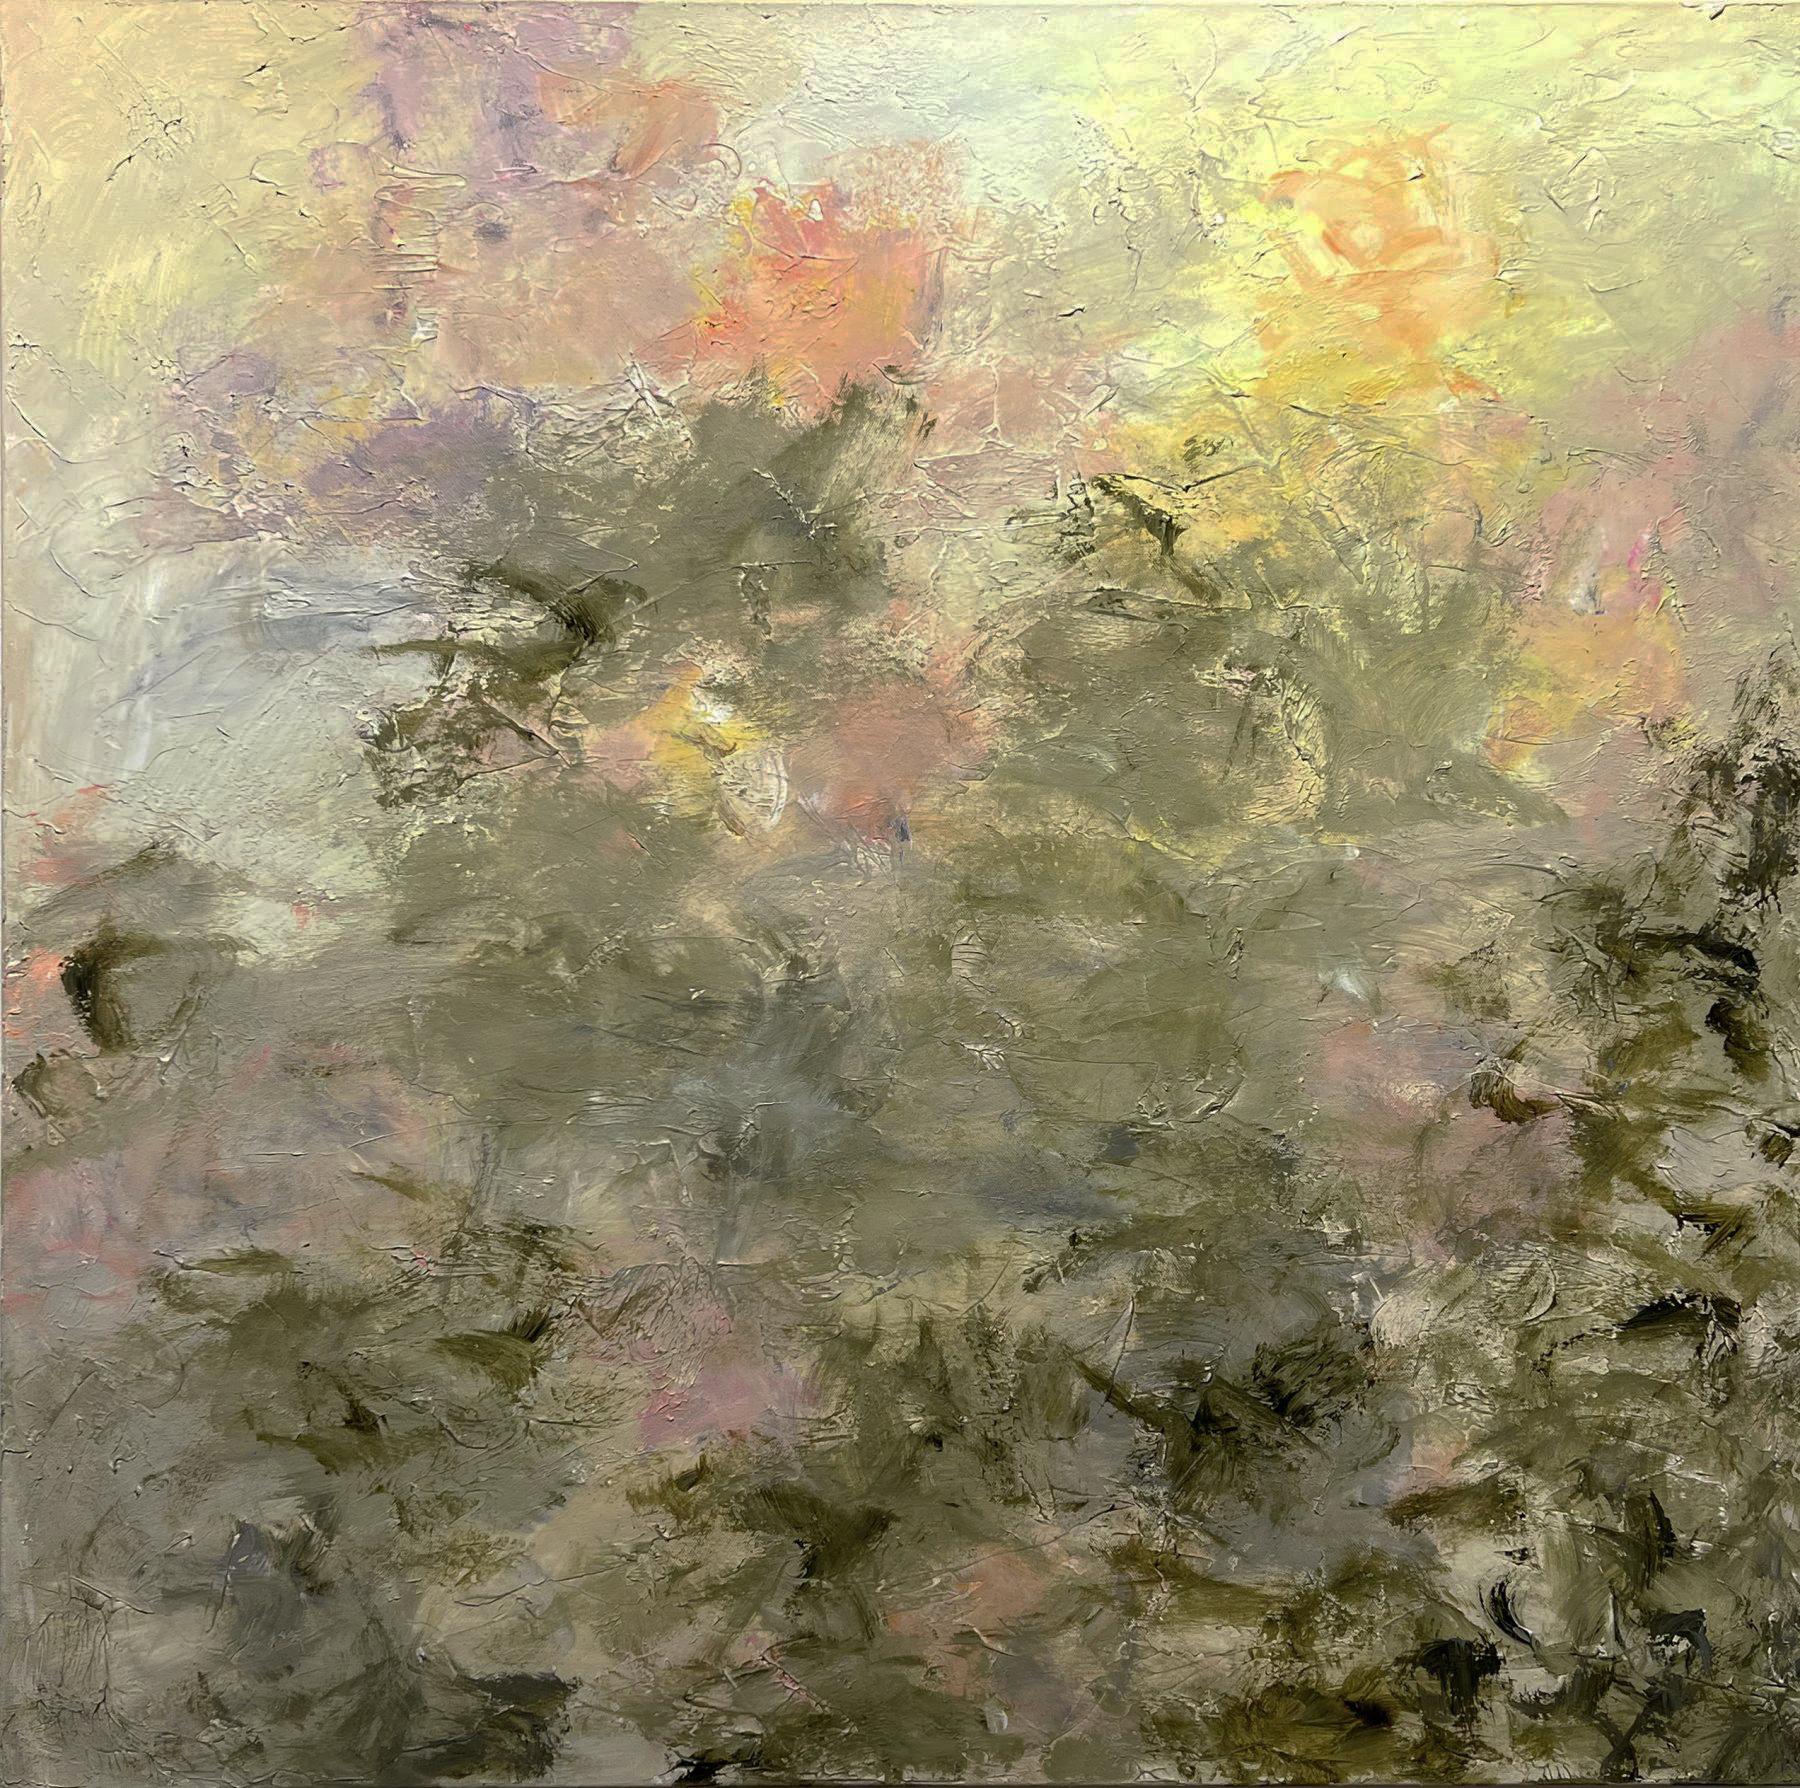 Gary Zack, "Golden Blush", 36x36 Peinture à l'huile sur toile, floral rose atmosphérique